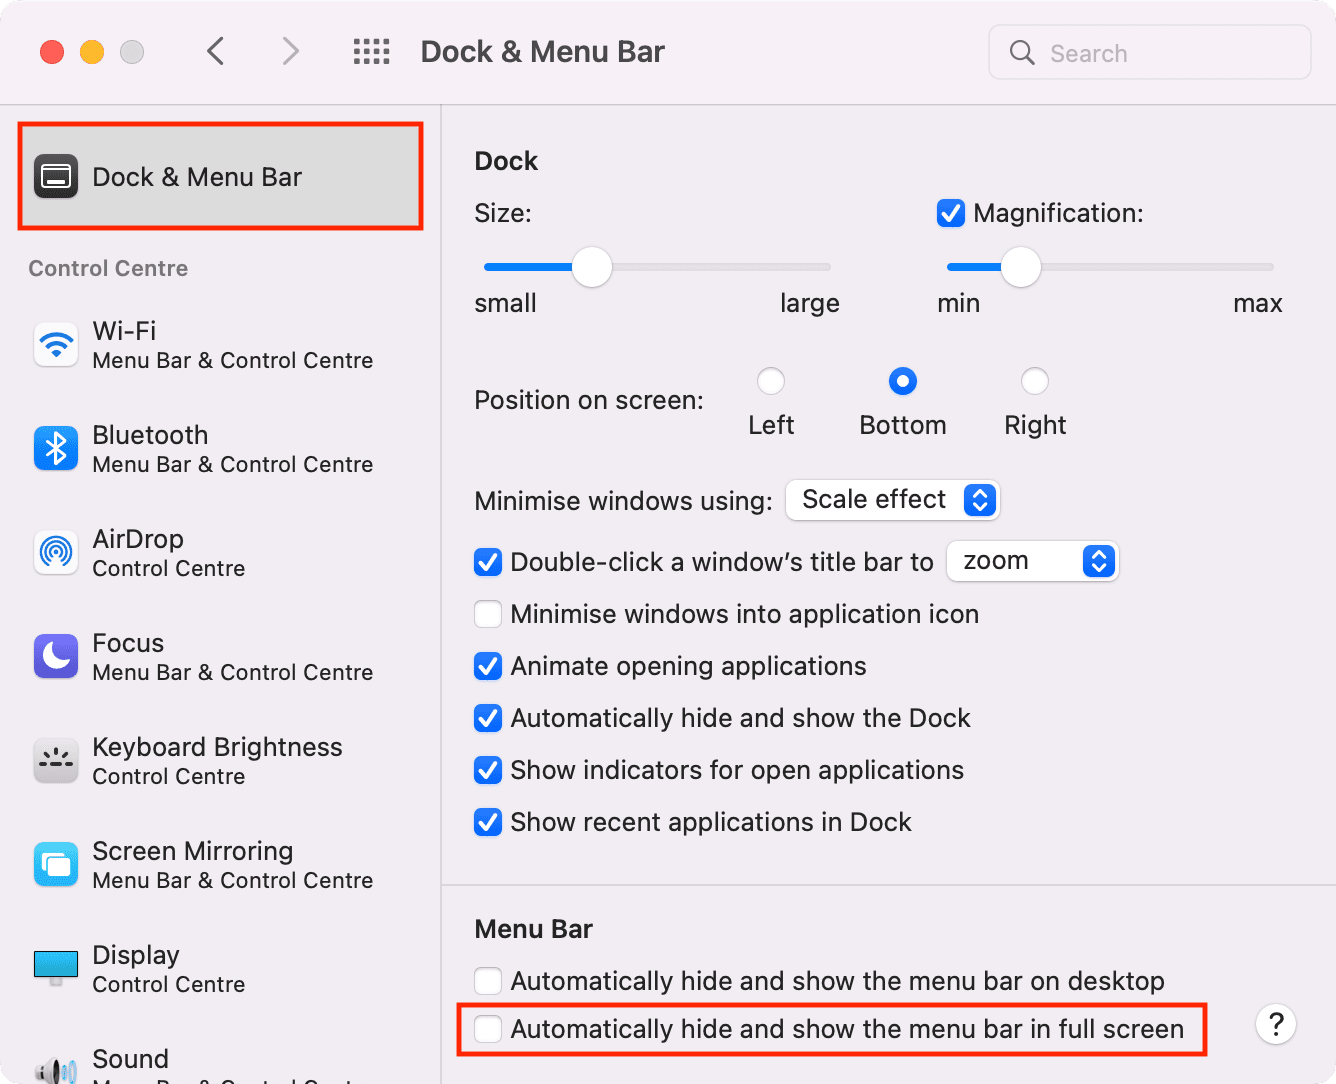 Masquer et afficher automatiquement la barre de menus en plein écran sur Mac